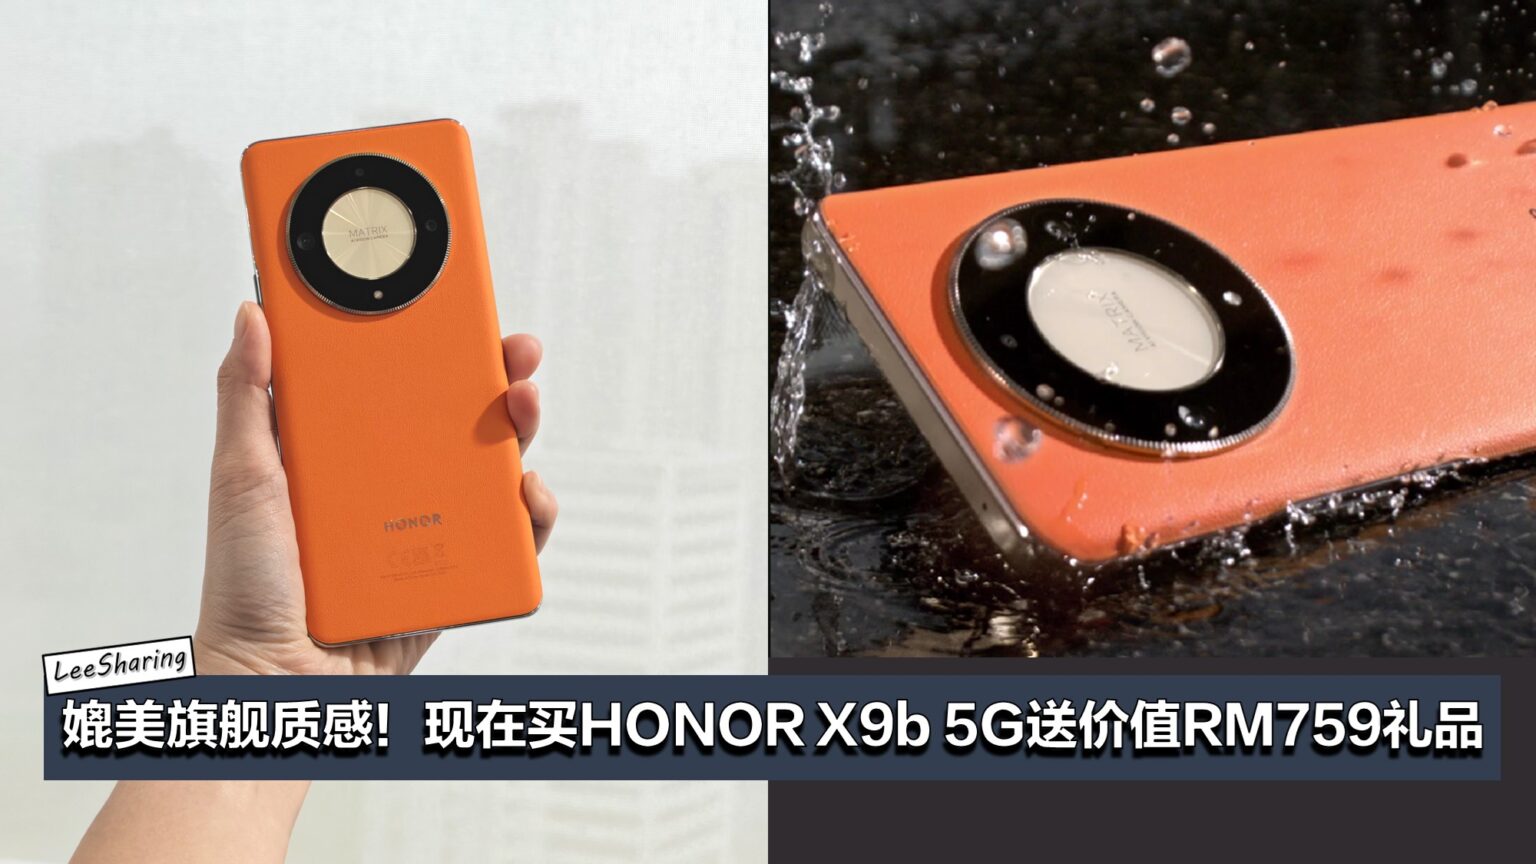 RM1,499就可以买到旗舰质感的手机！HONOR X9b 5G还有三天续航大电池和256GB大容量！